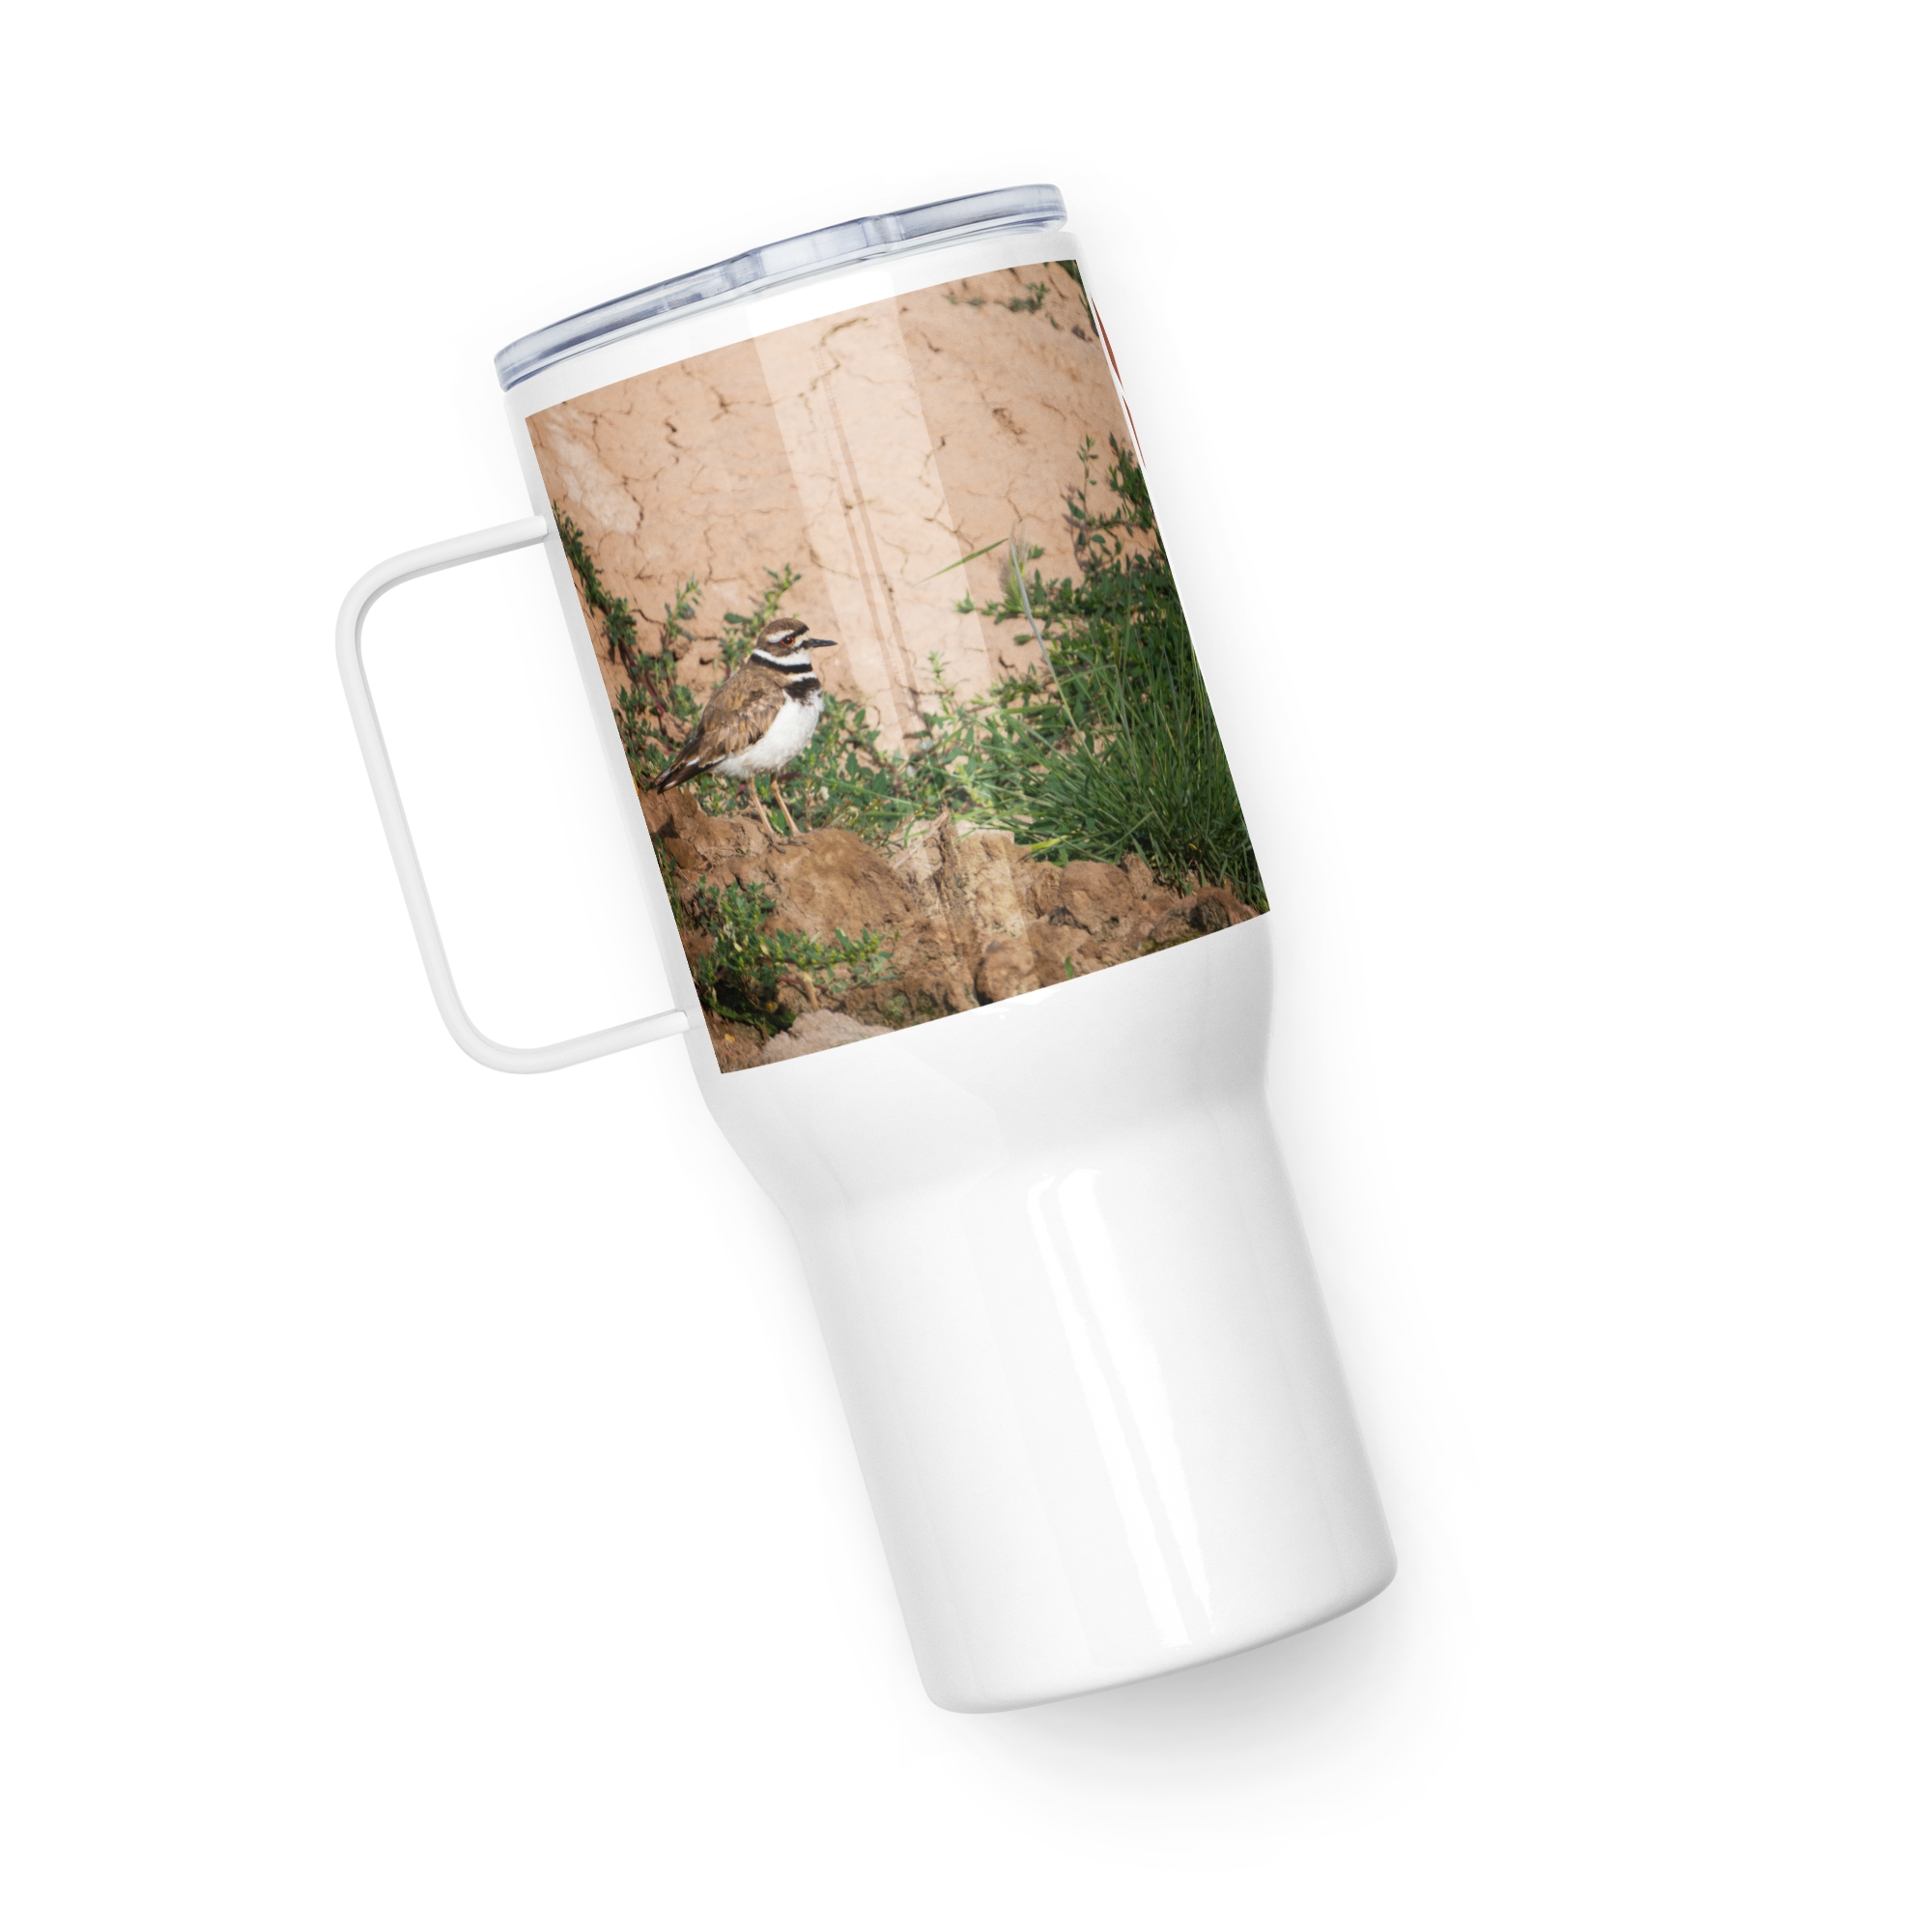 Killdeer Travel mug with a handle